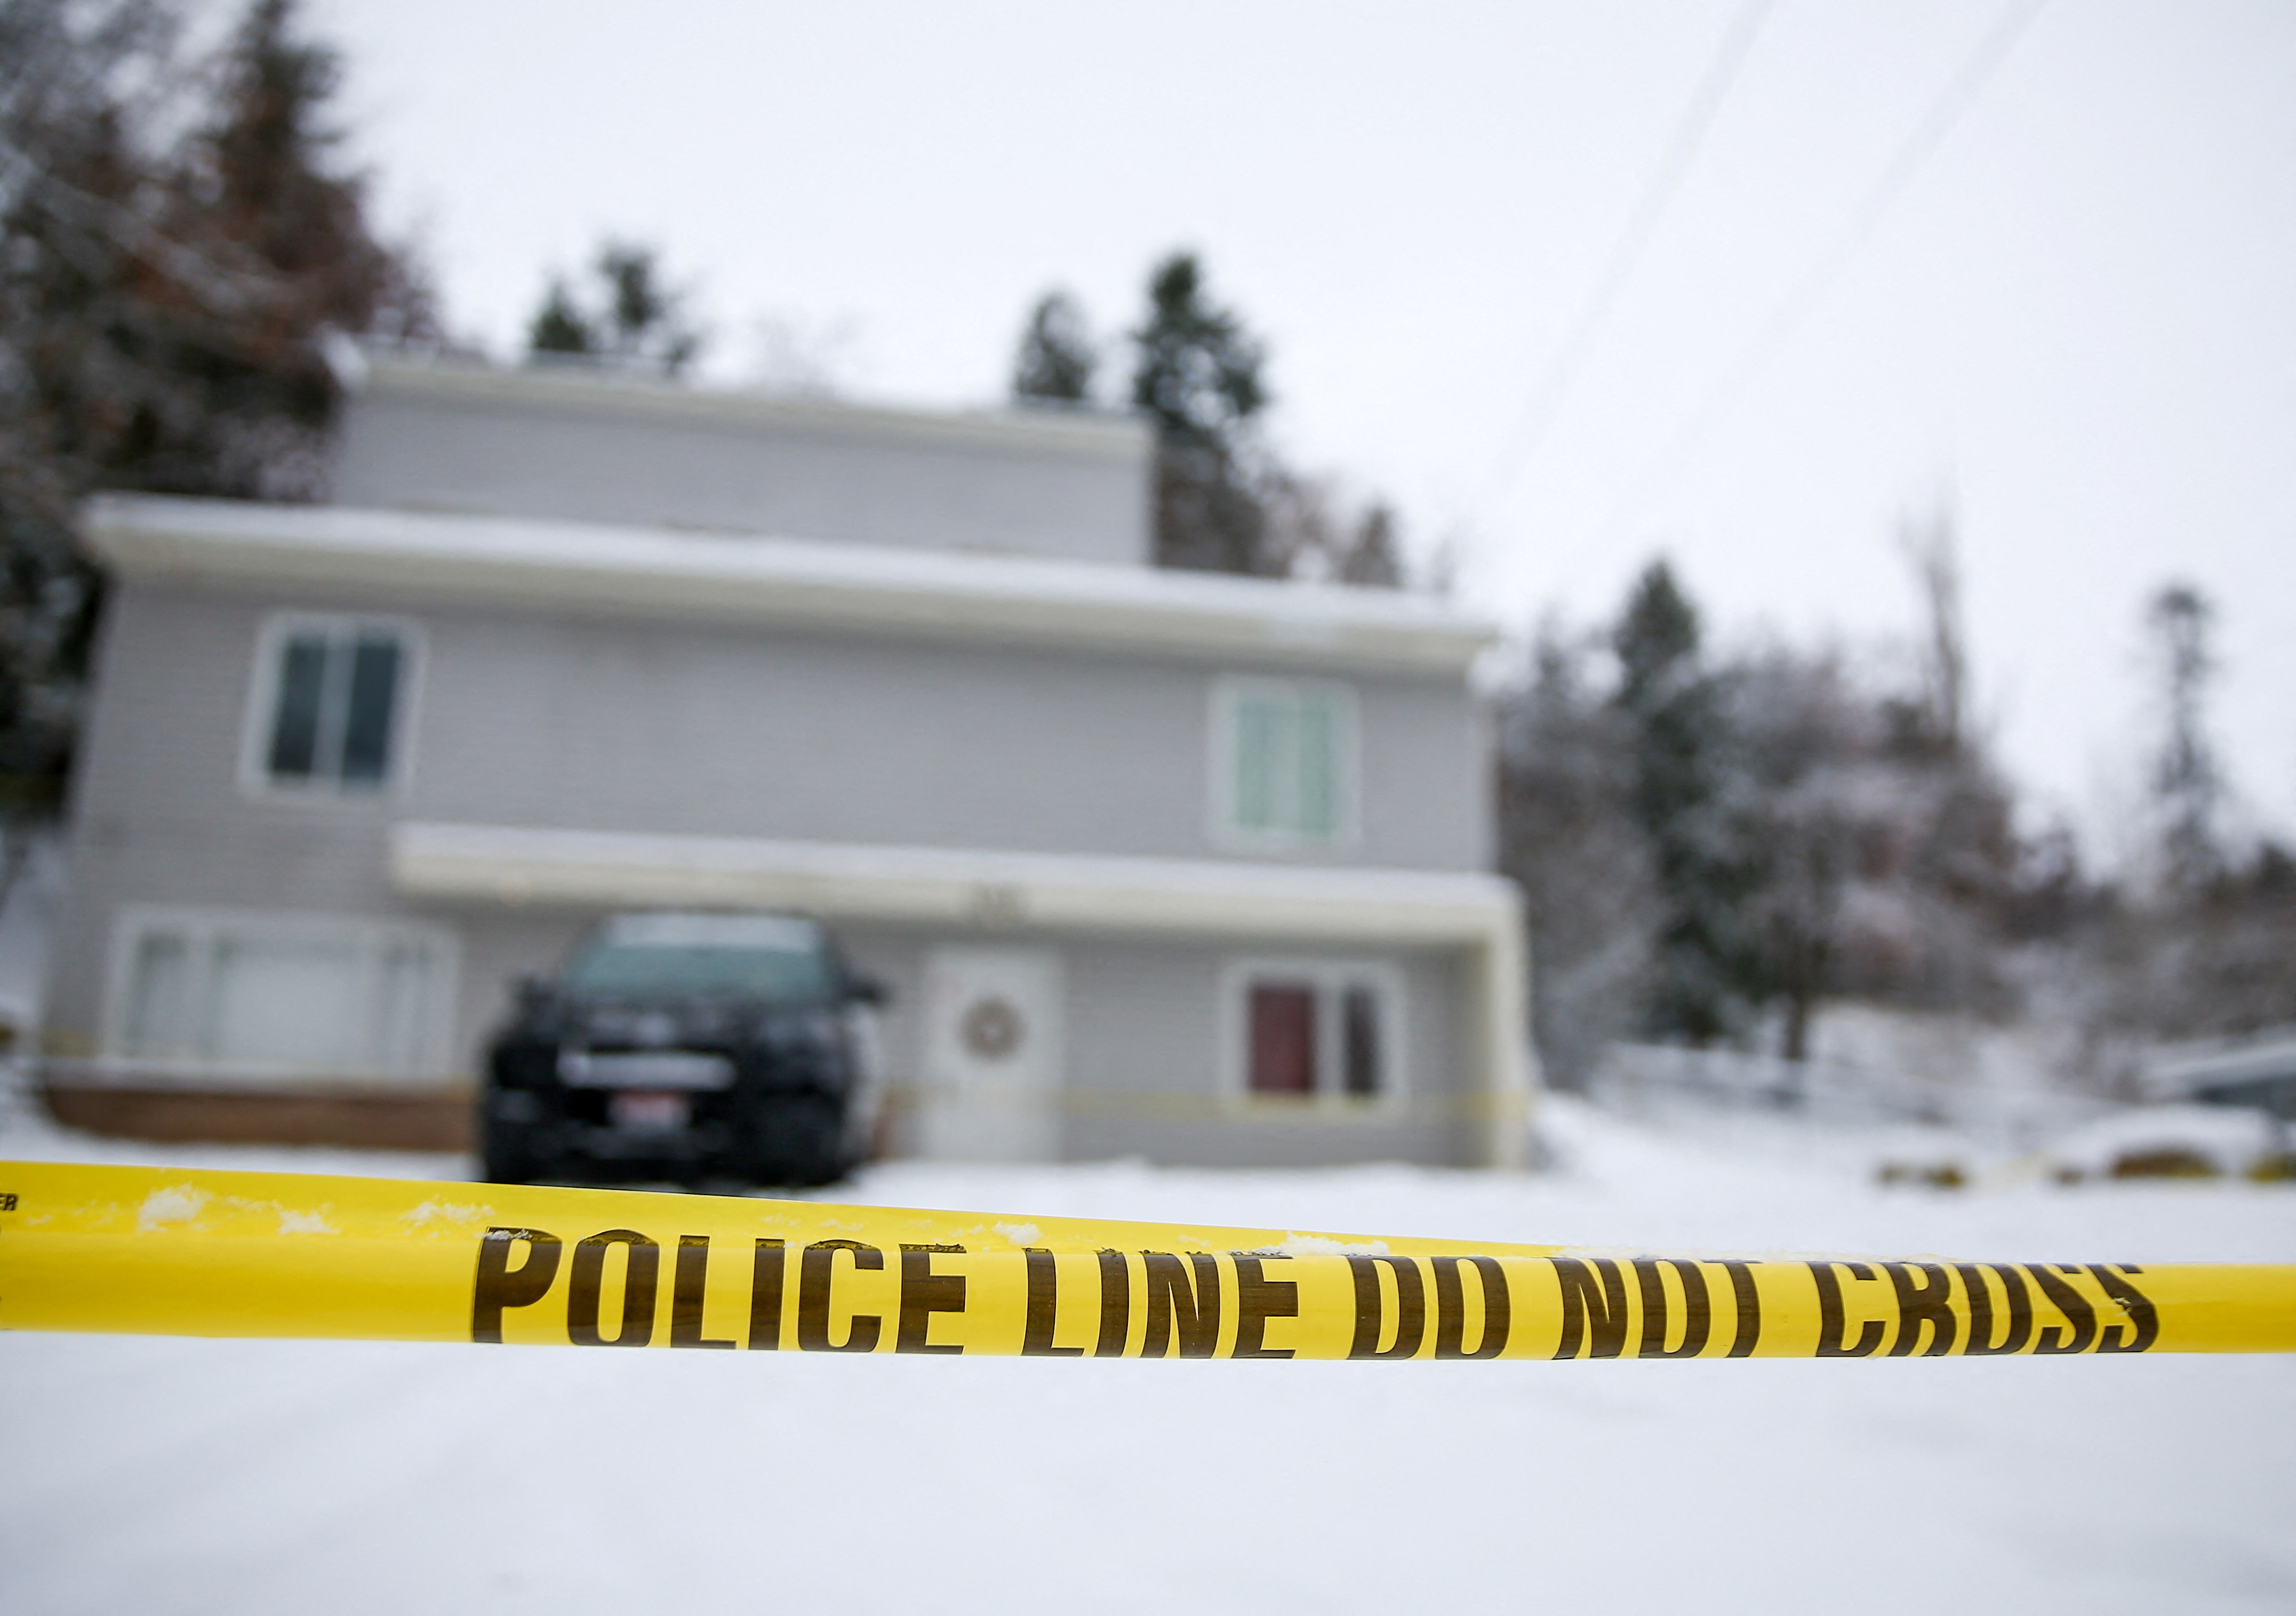 La residenciadonde fueron encontrados muertos los cuatro estudiantes de la Universidad de Idaho (REUTERS/Lindsey Wasson)